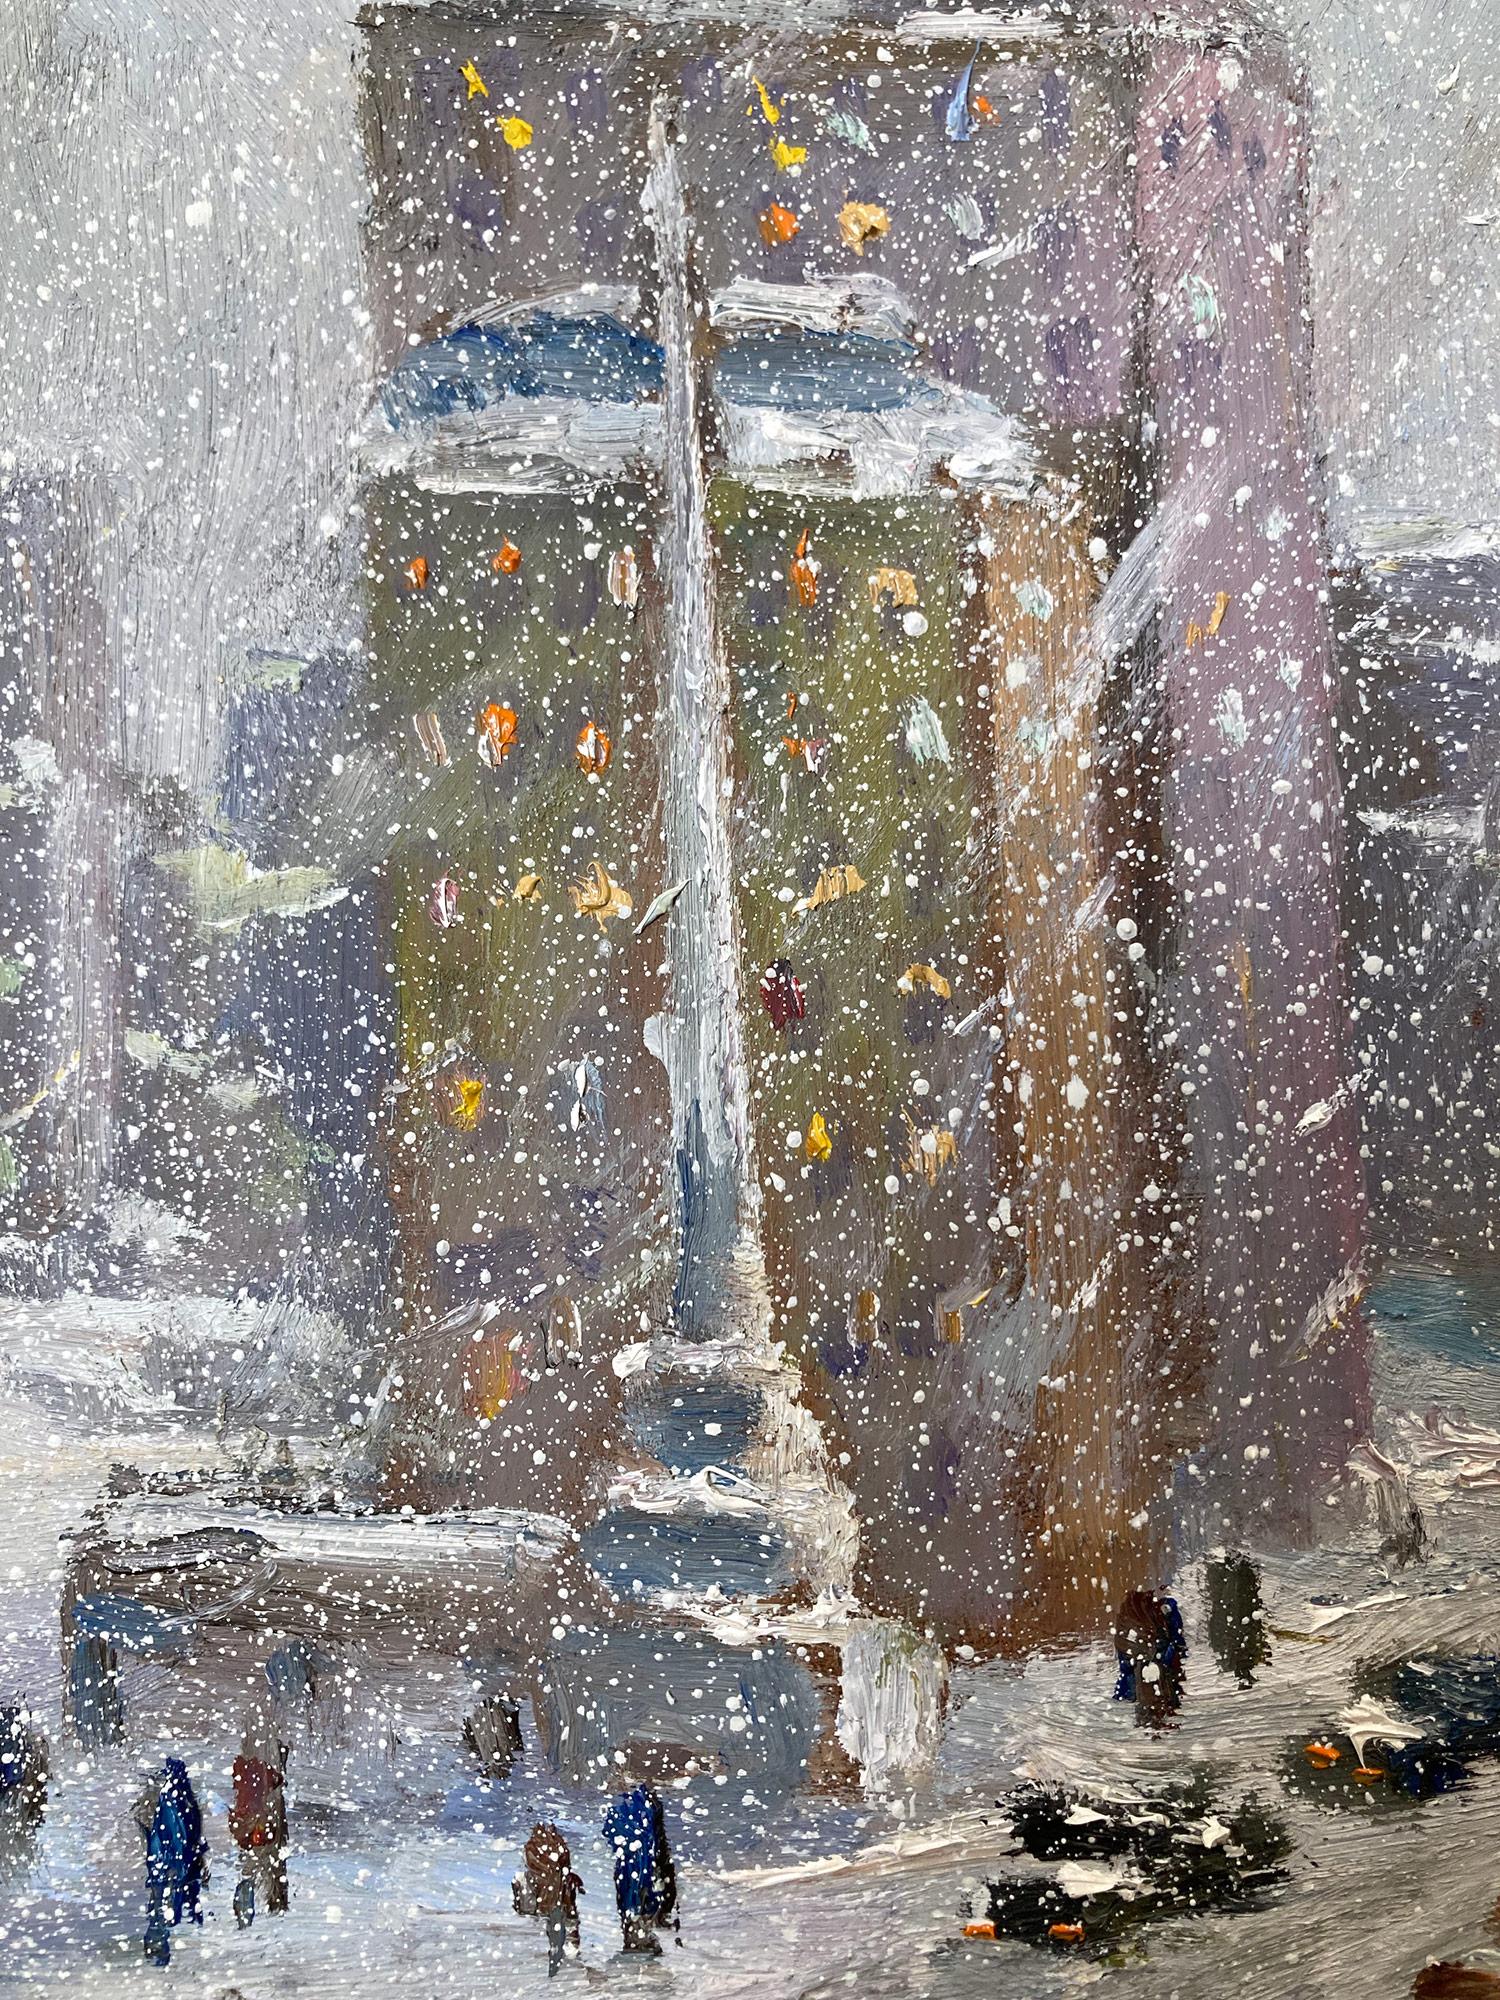 Impressionistische New Yorker Winter-Stadtszene, die die 57th Street in New York City, Autos und Fußgänger in einer sehr intimen, aber energiegeladenen Weise zeigt. Christophe ist bekannt dafür, die Schönheit und Einfachheit einer früheren Zeit des